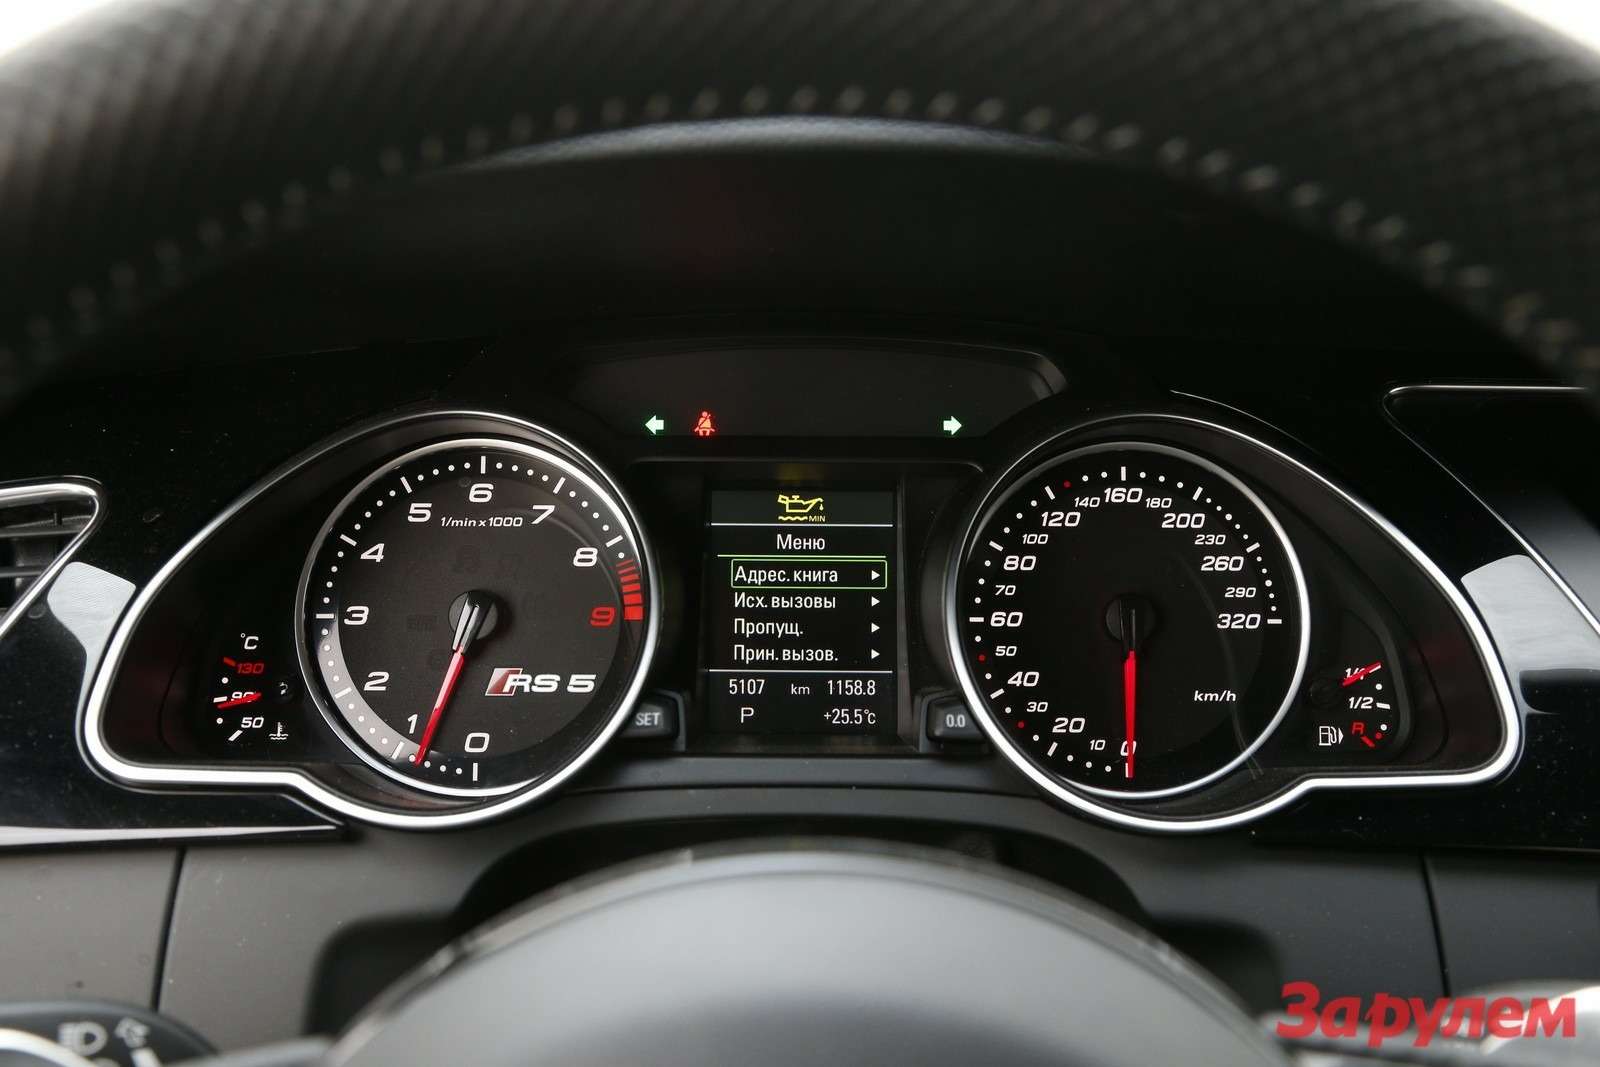 6.	Без ограничителя Audi RS5 может развить 280 км/ч – но на «Смоленском кольце» скорость не превышала 210 км/ч.